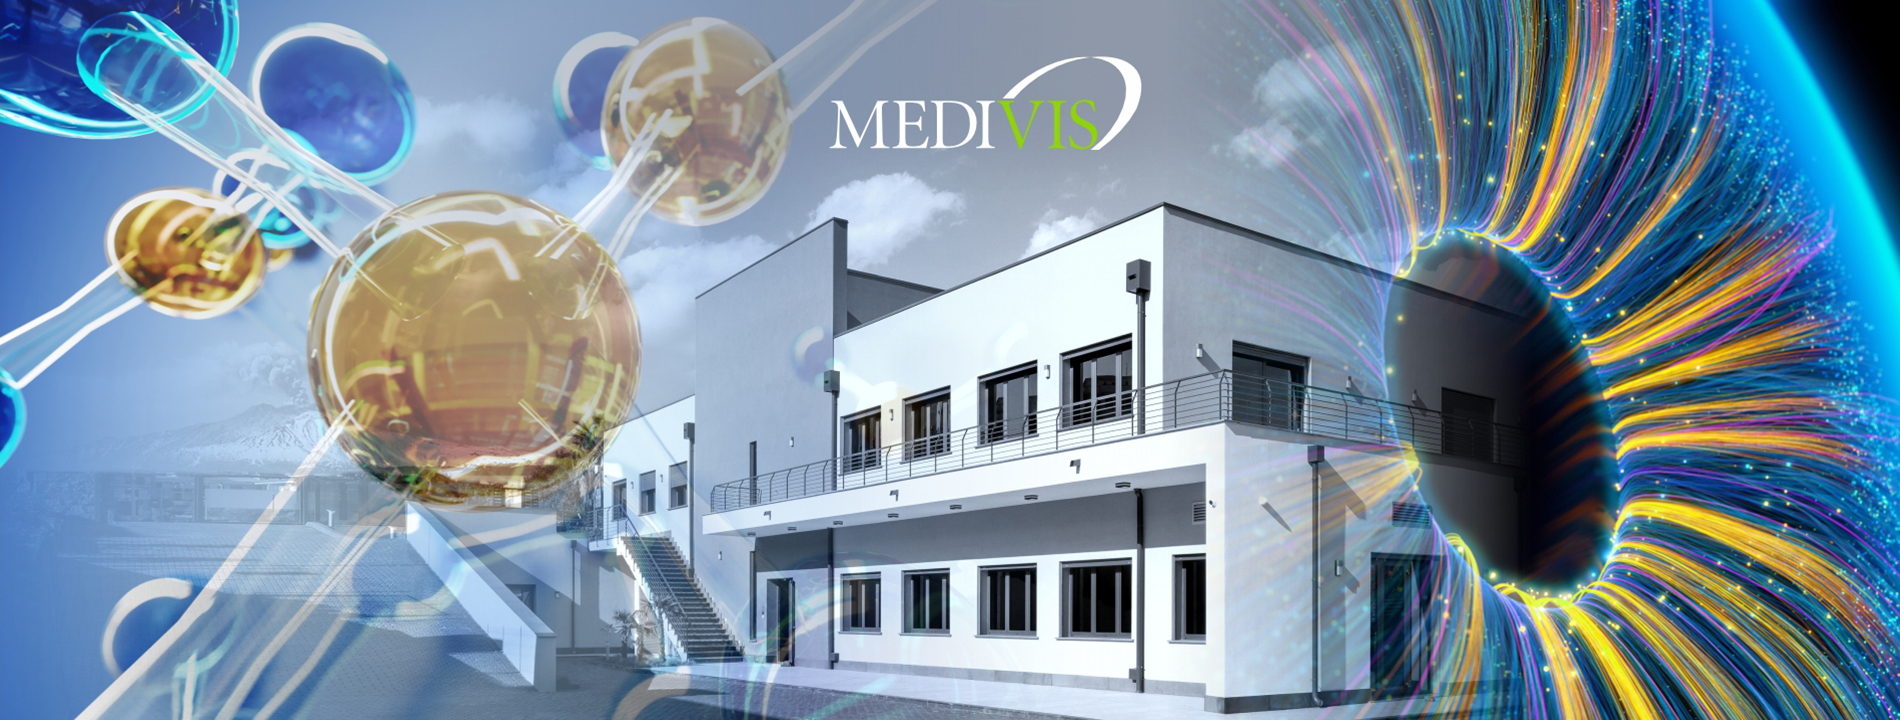 Il logo della Medivis e la sede